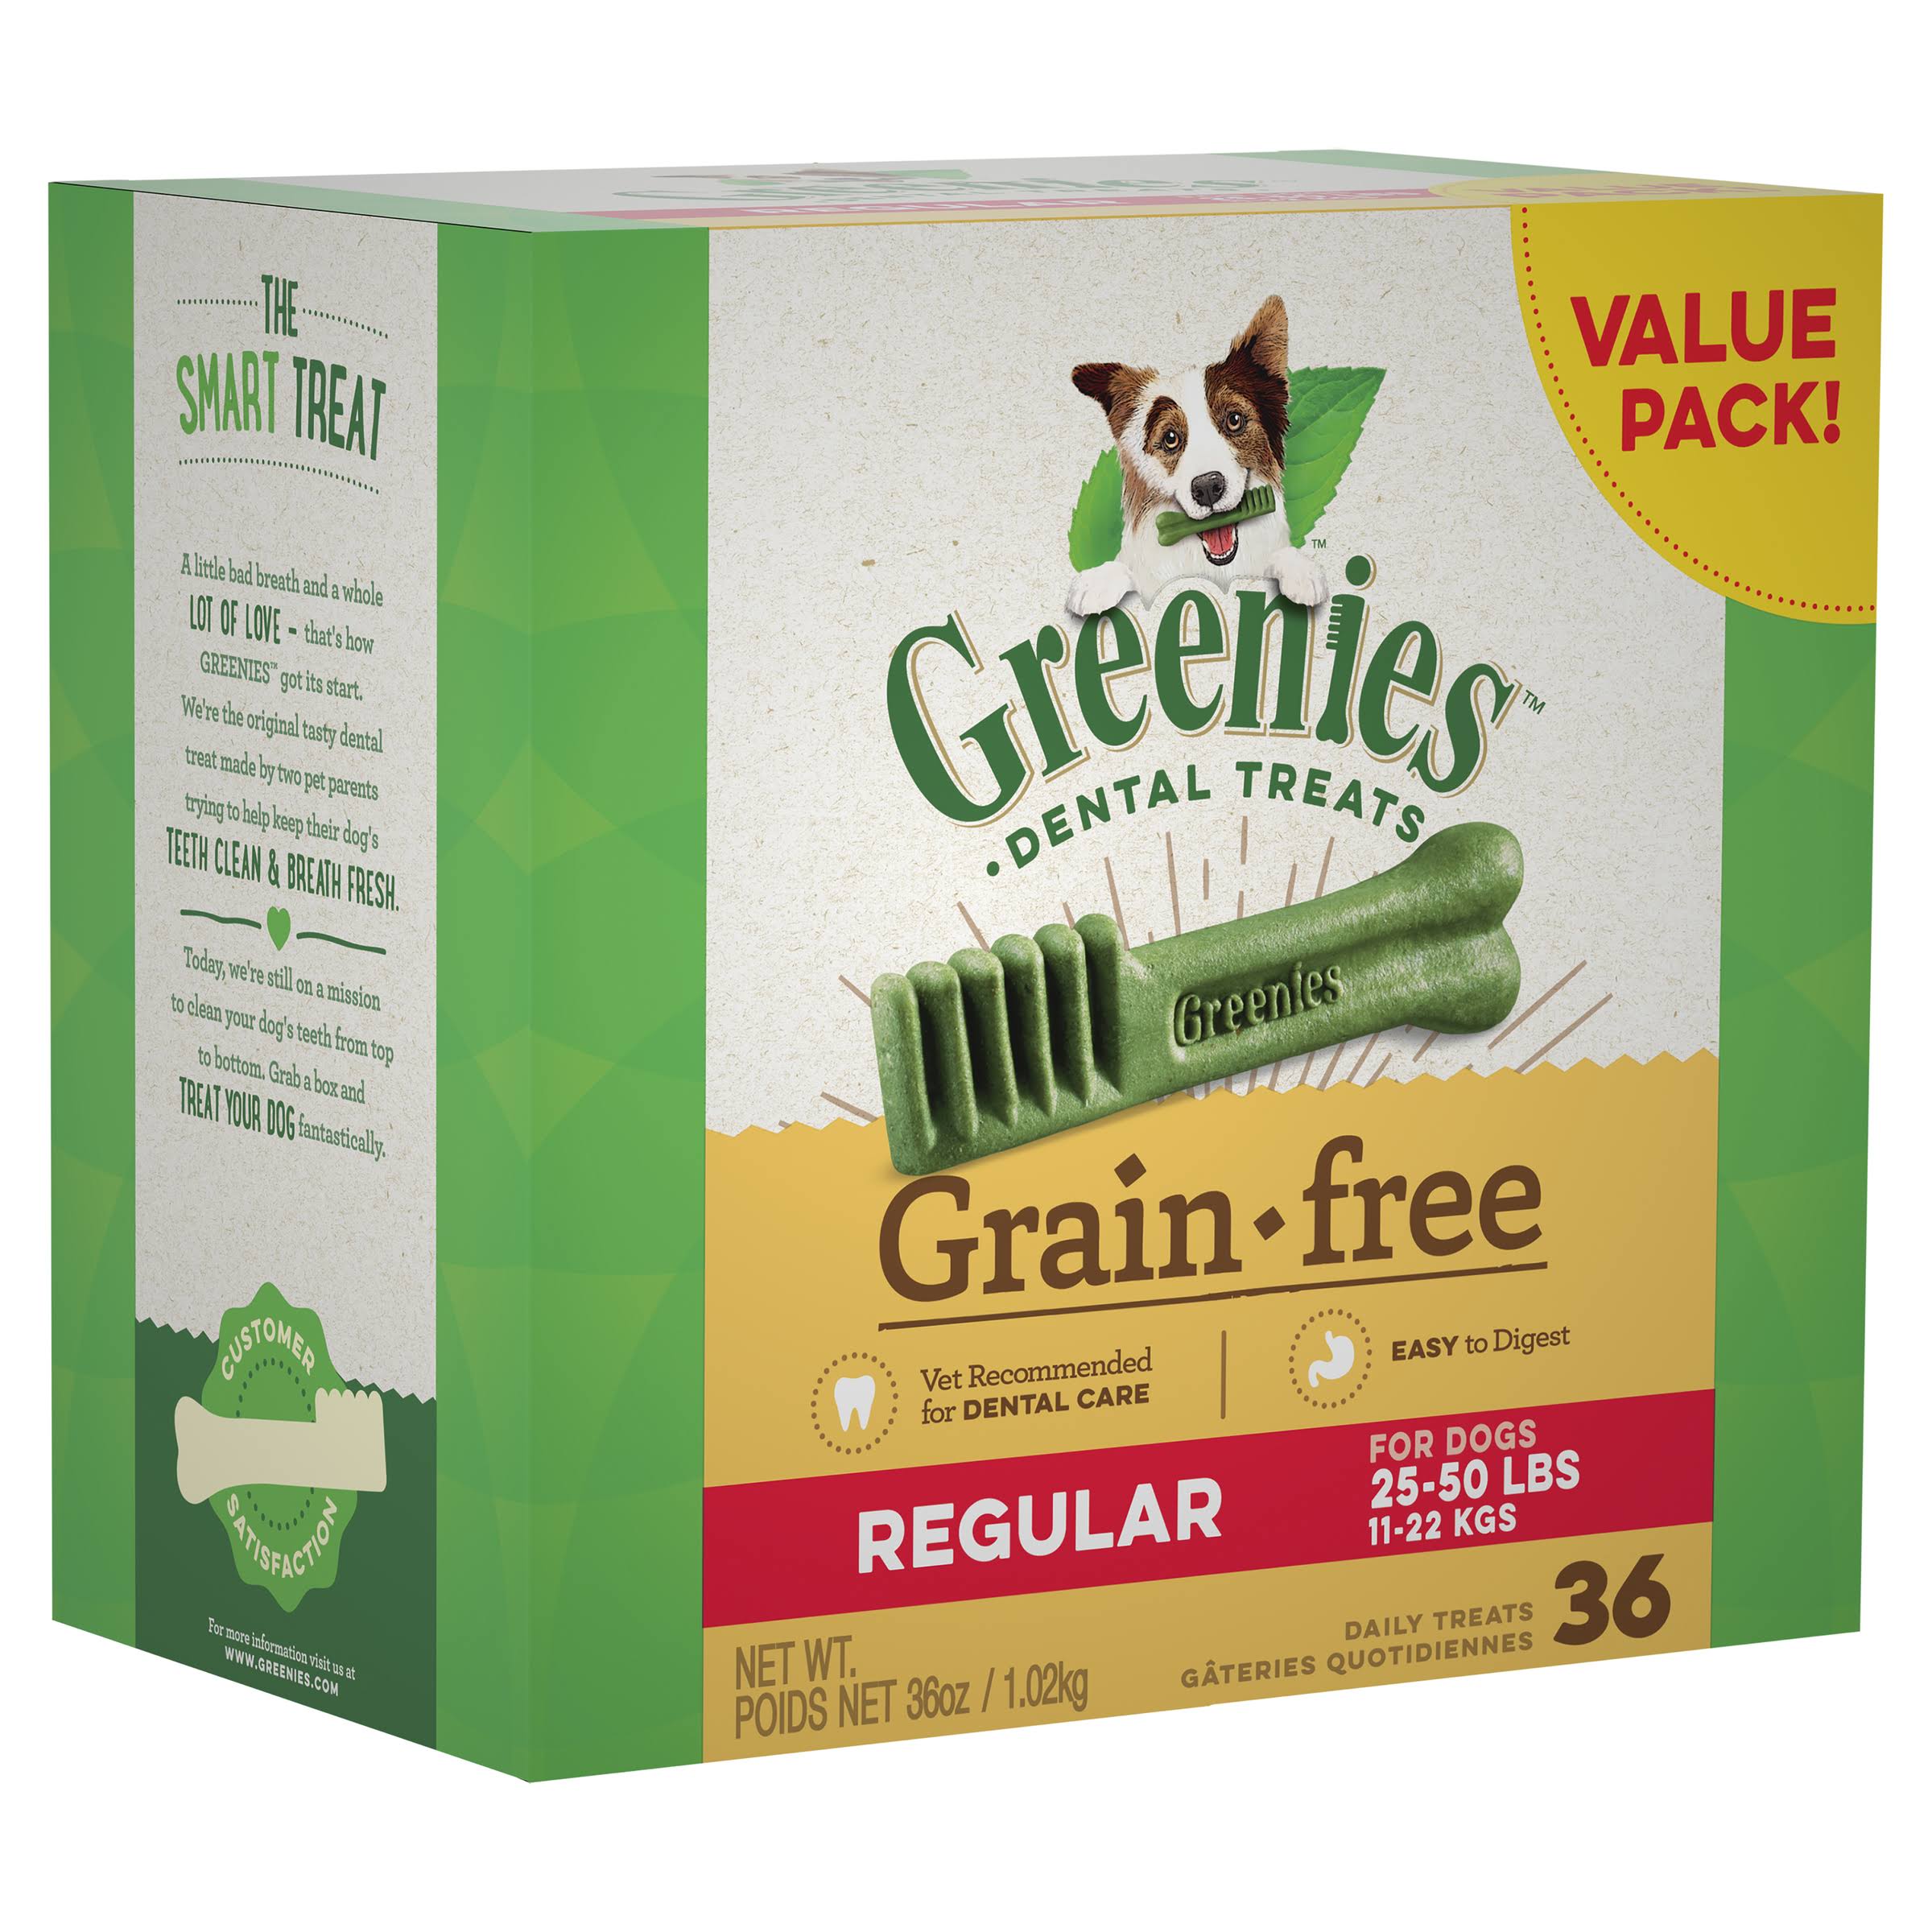 Greenies Dental Treats, Grain-Free, Regular, Value Pack - 36 treats, 36 oz